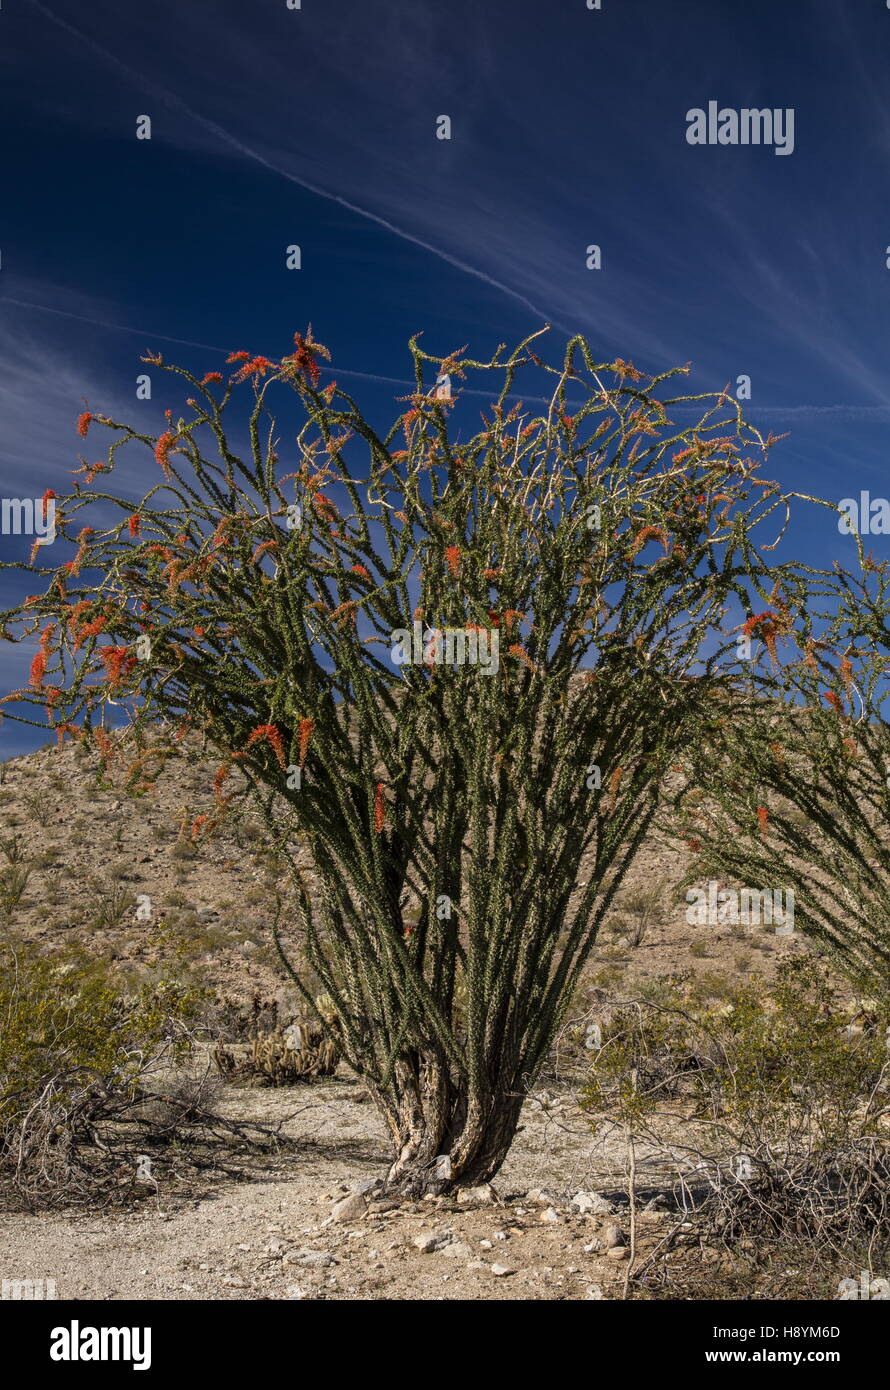 La société, Fouquieria splendens, en fleurs dans le désert californien. Anza-Borrego Desert State Park, désert de Sonora, en Californie Banque D'Images